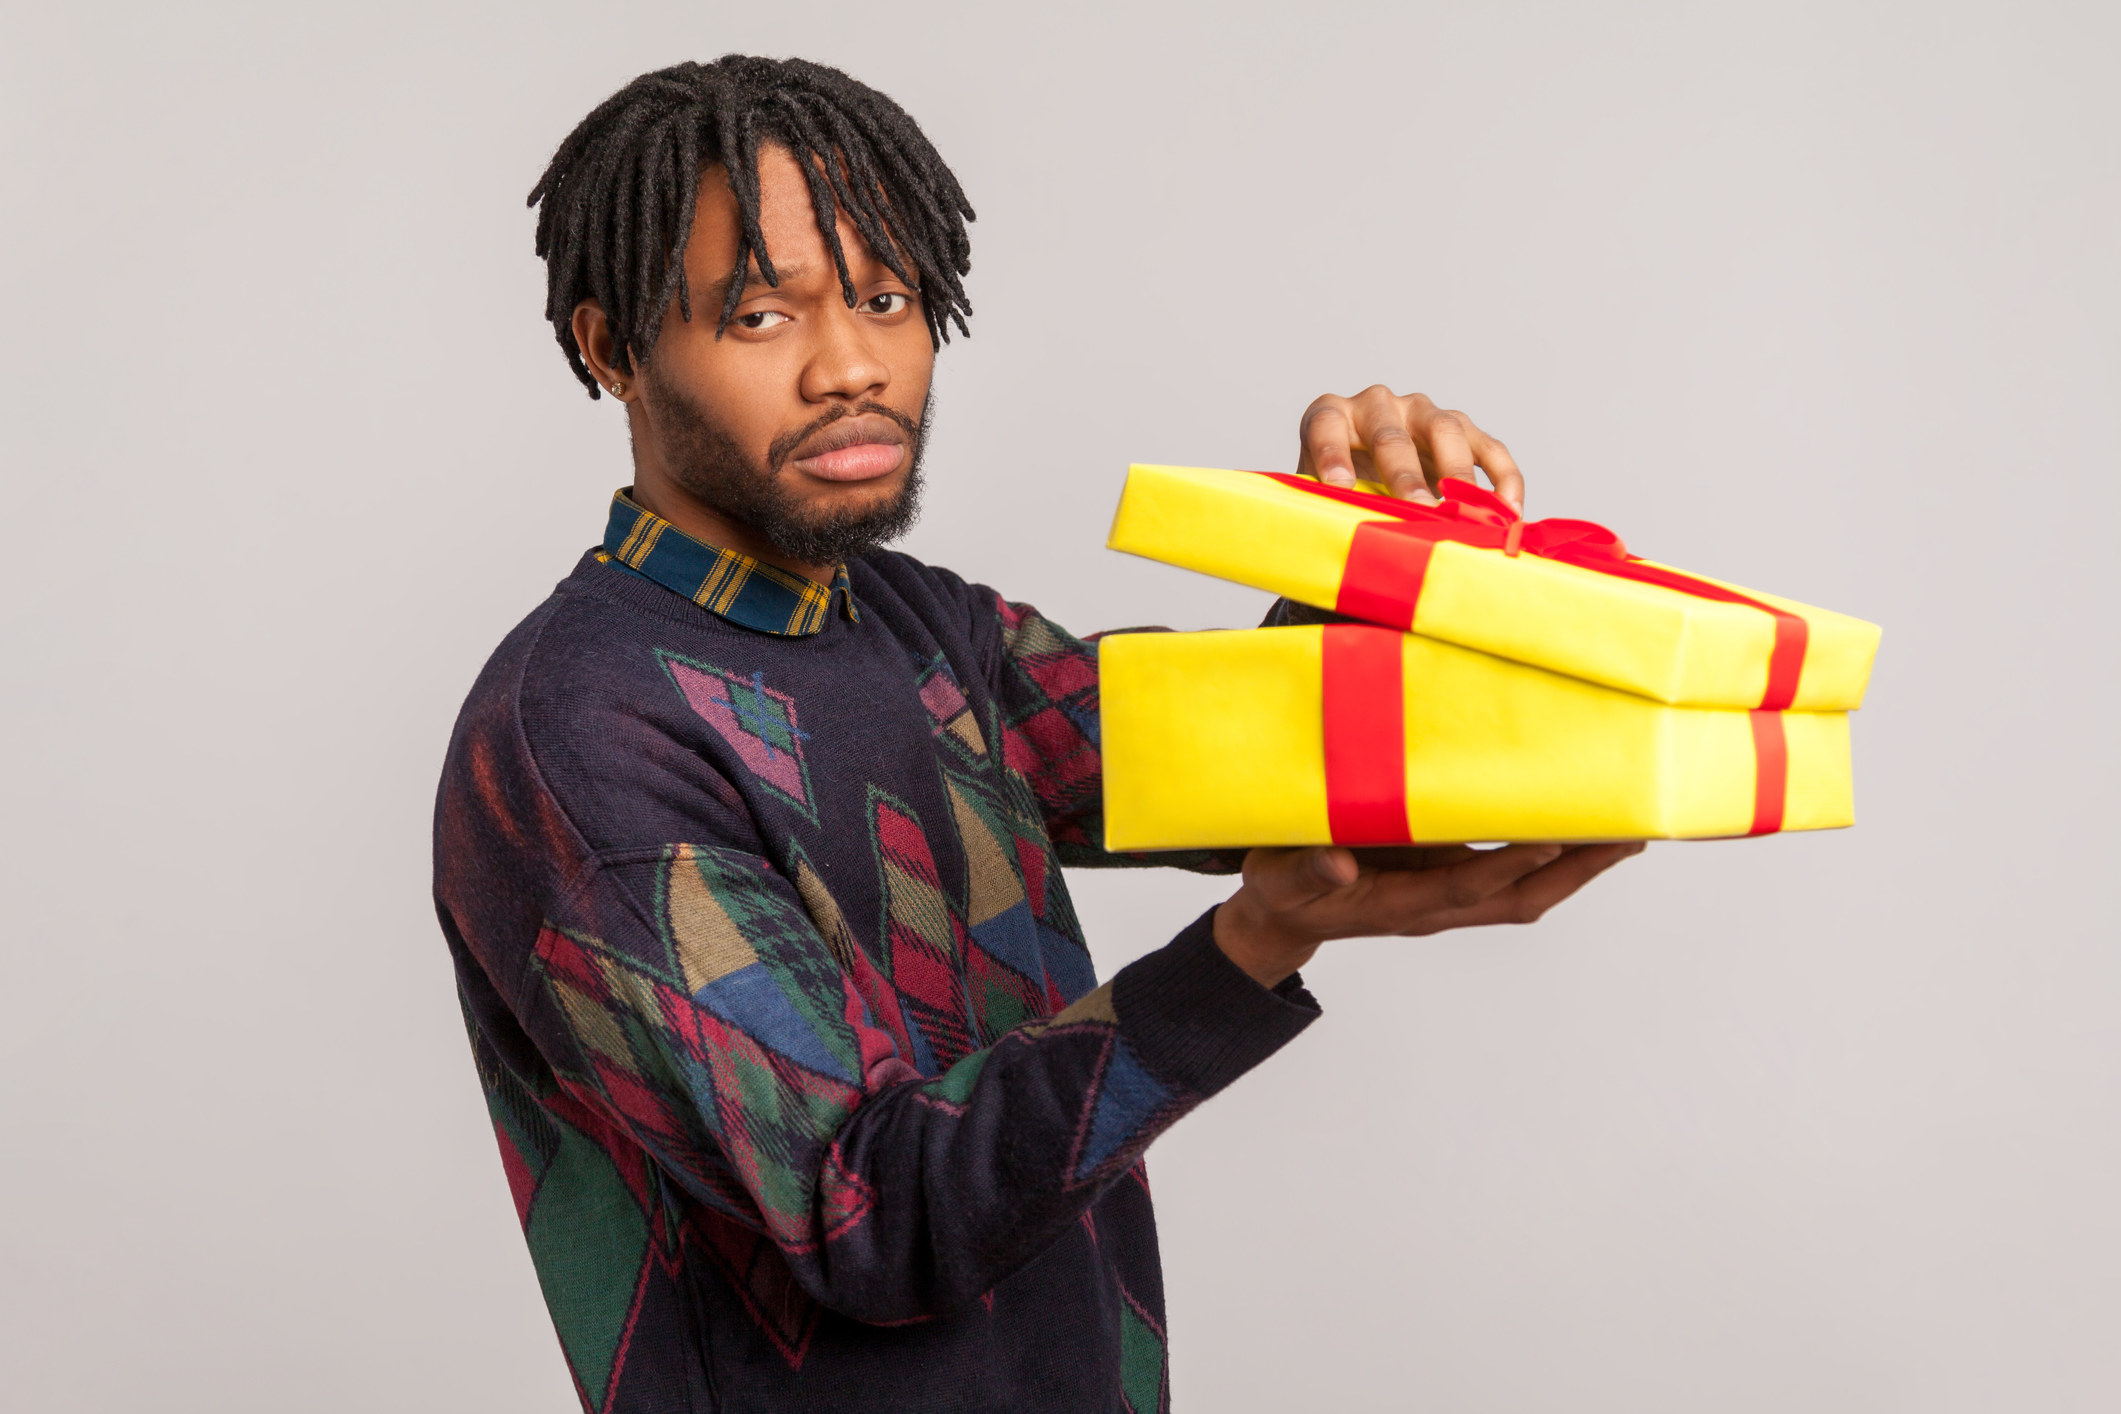 A man holding a present